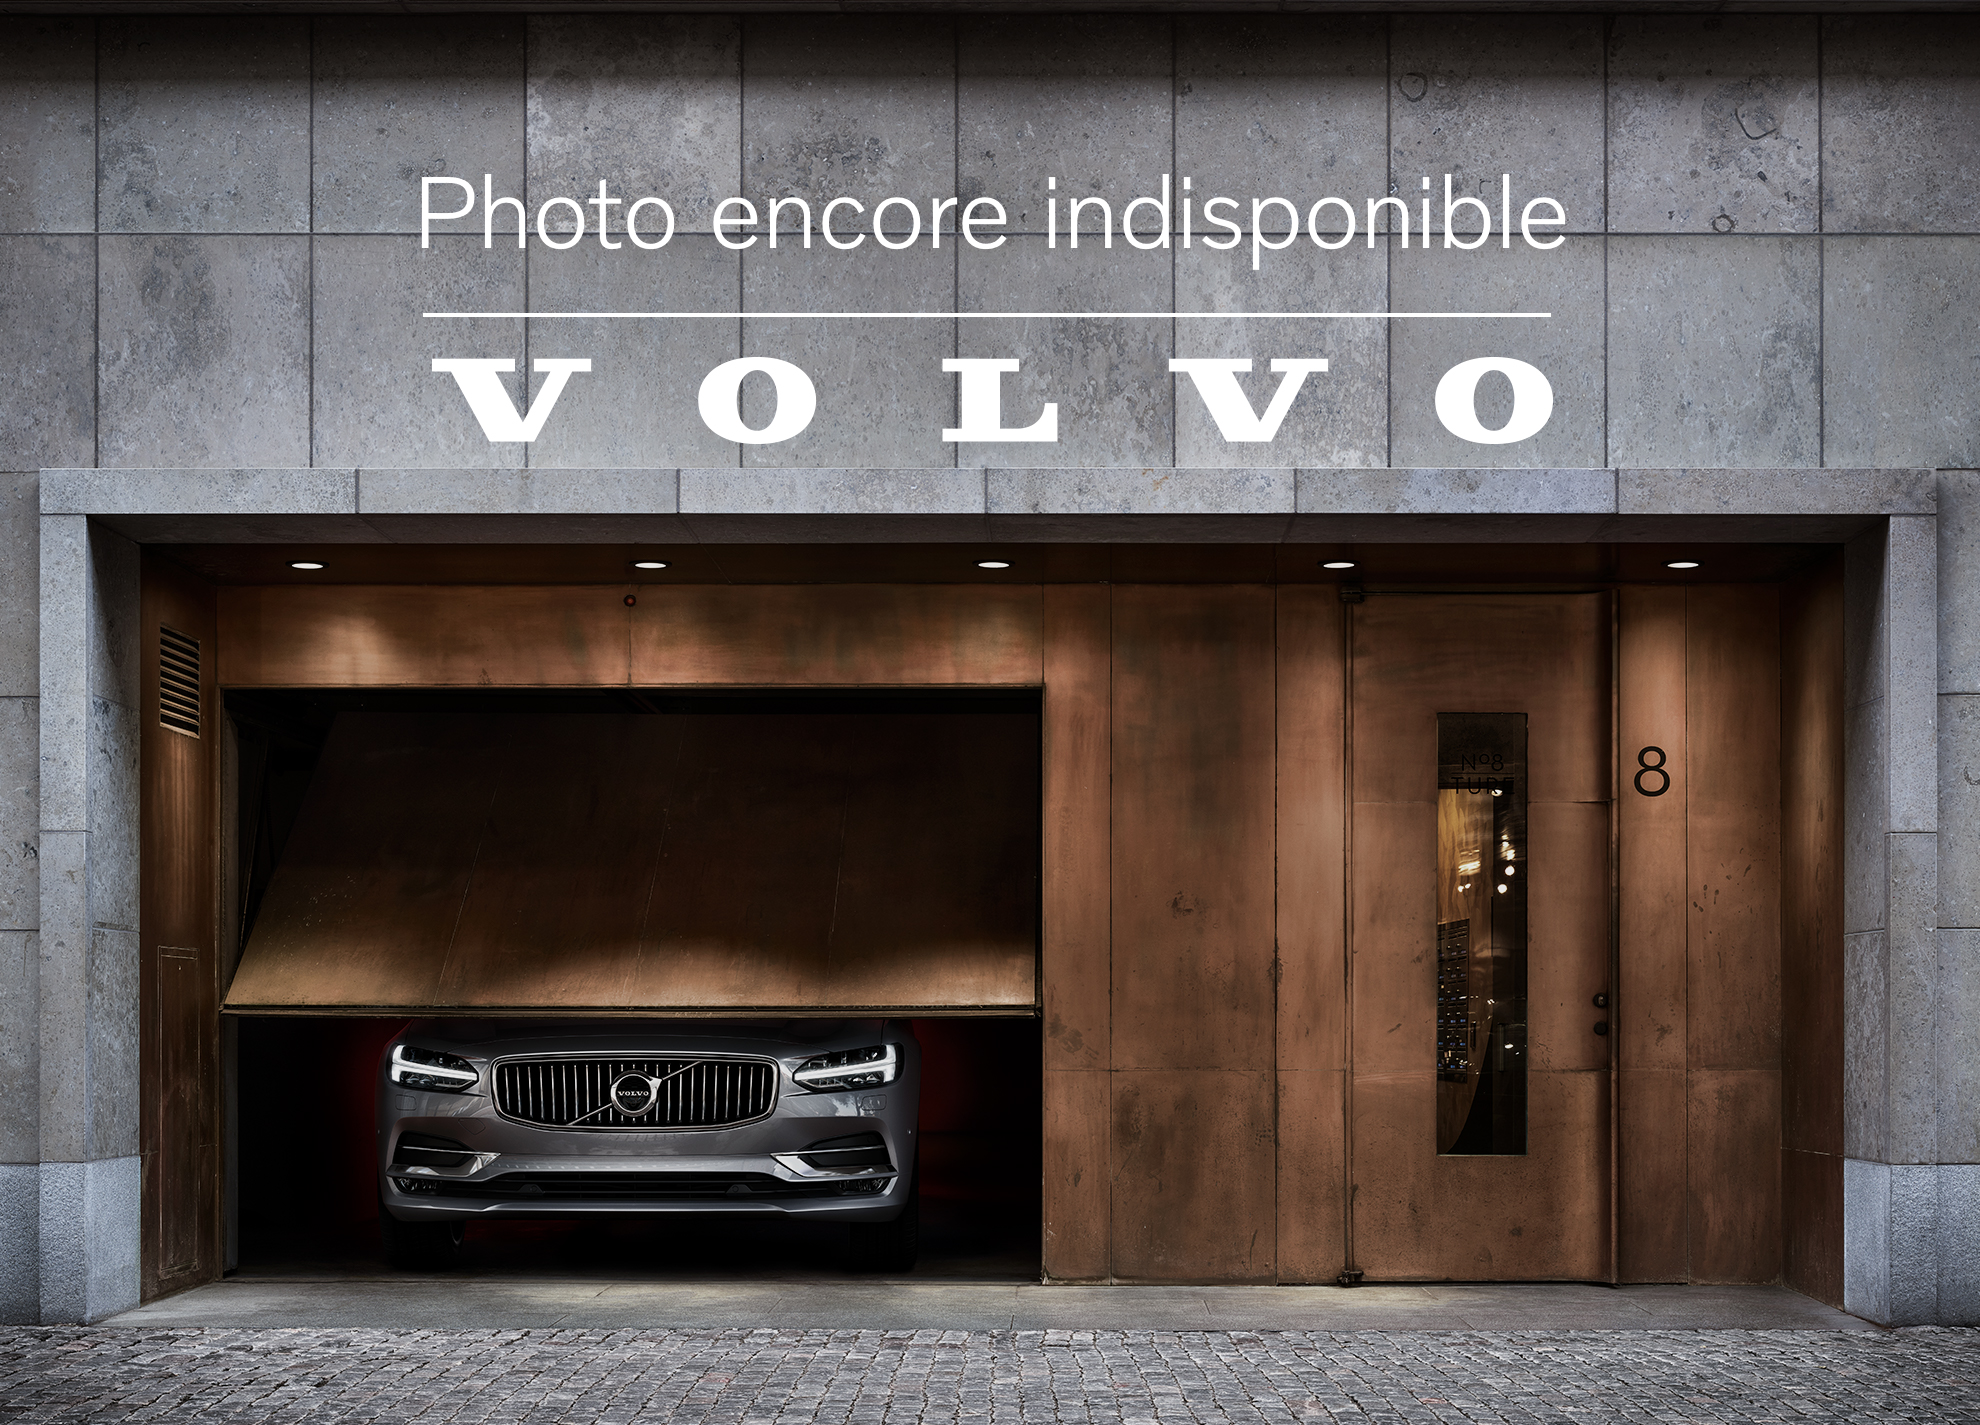 Volvo XC40 Momentum